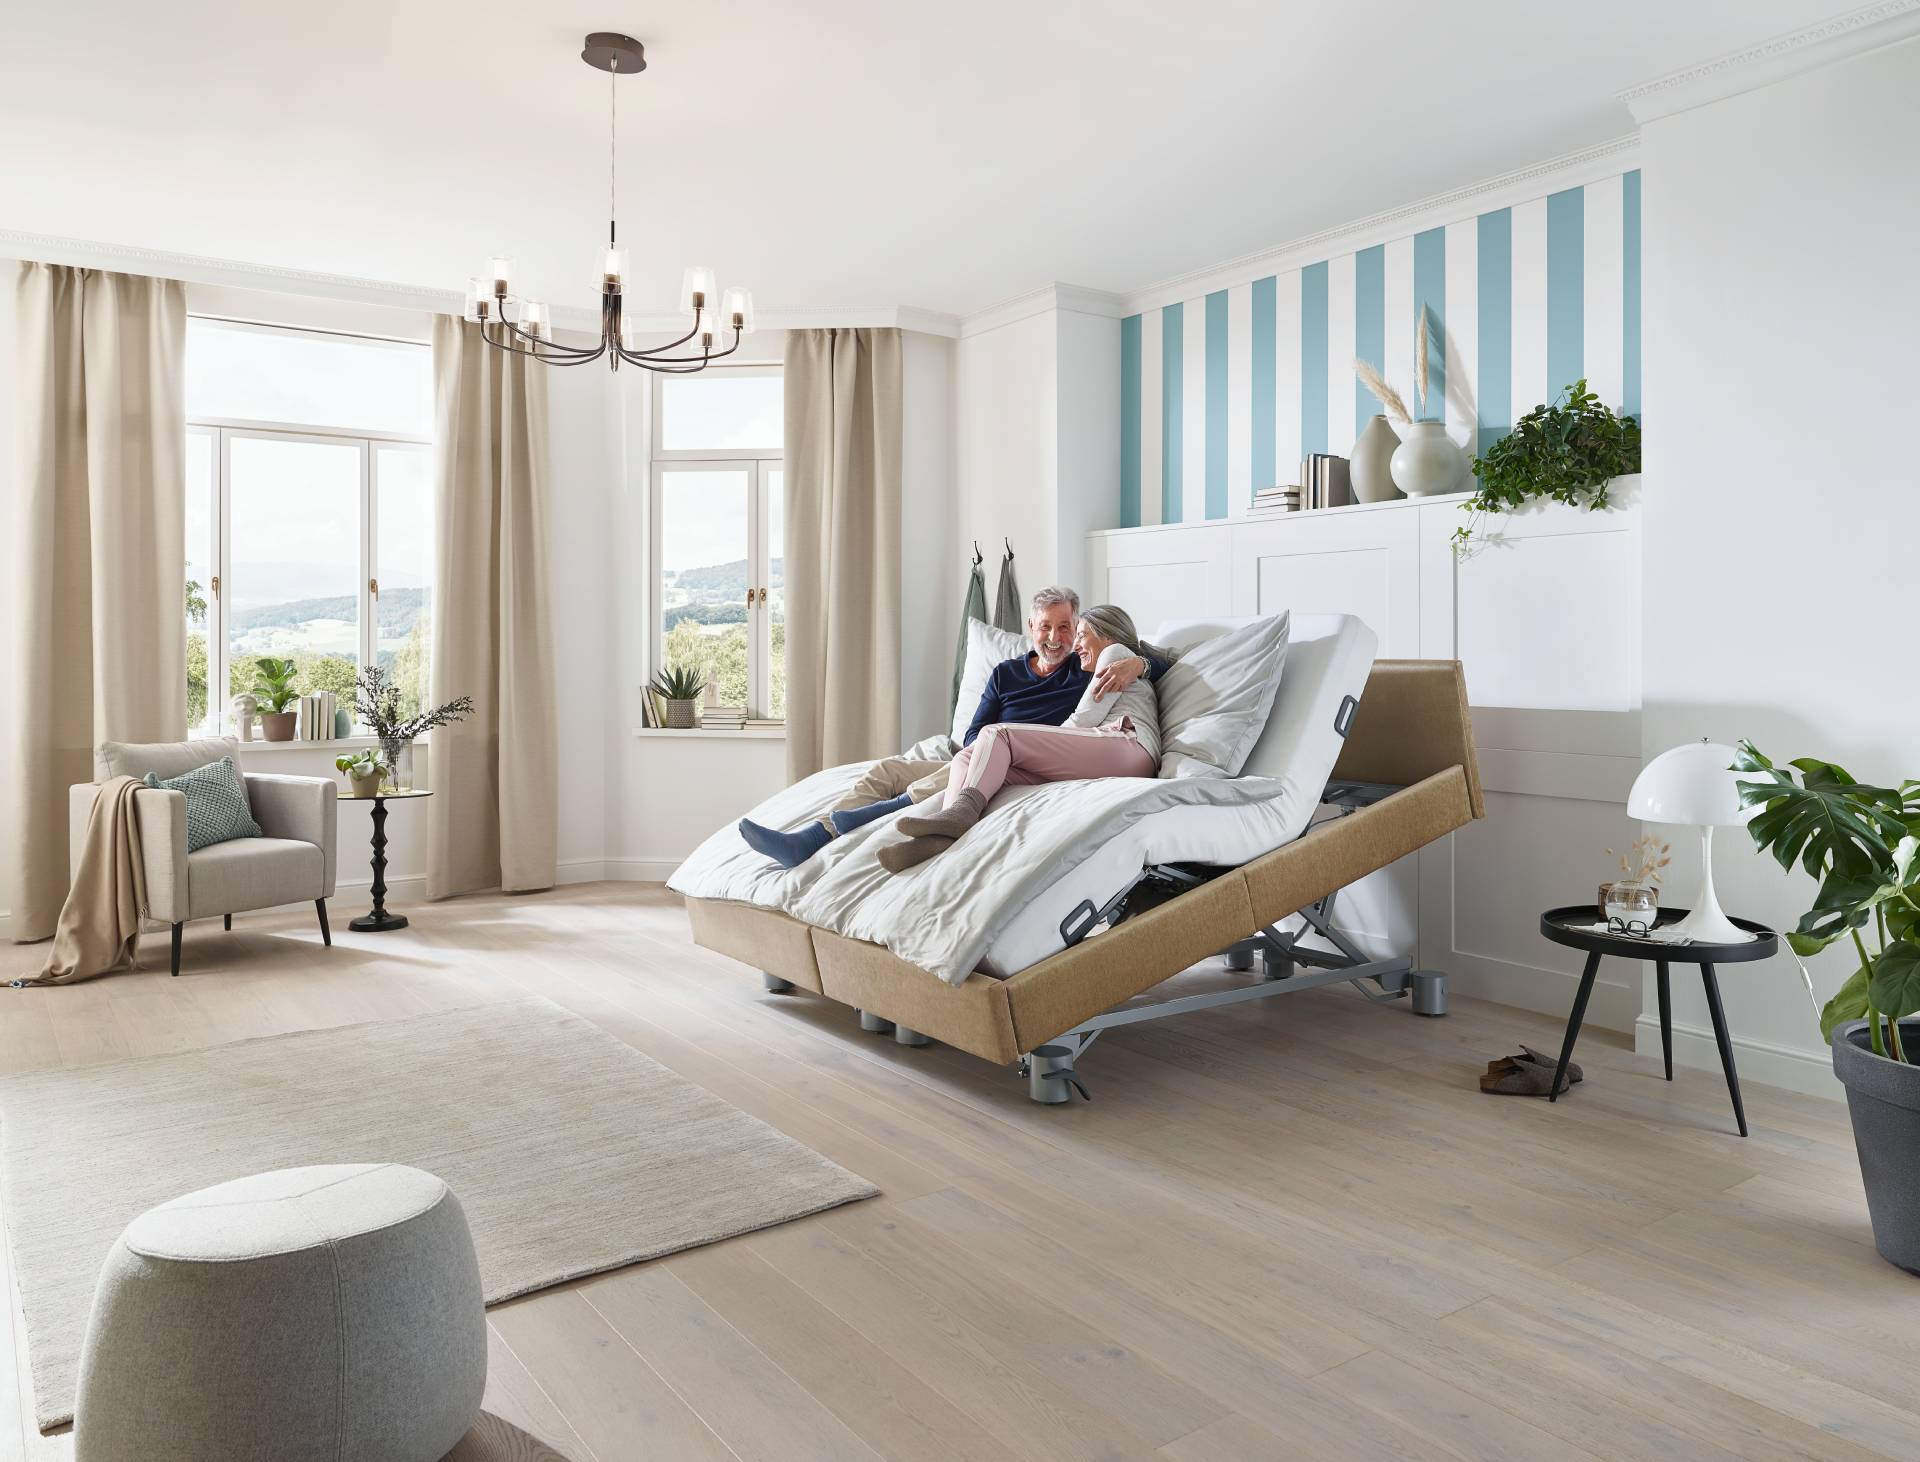 Libra Partner - Traumhafter Schlaf für Paare - Libra von Stiegelmeyer das Senioren Komfort Pflegebett